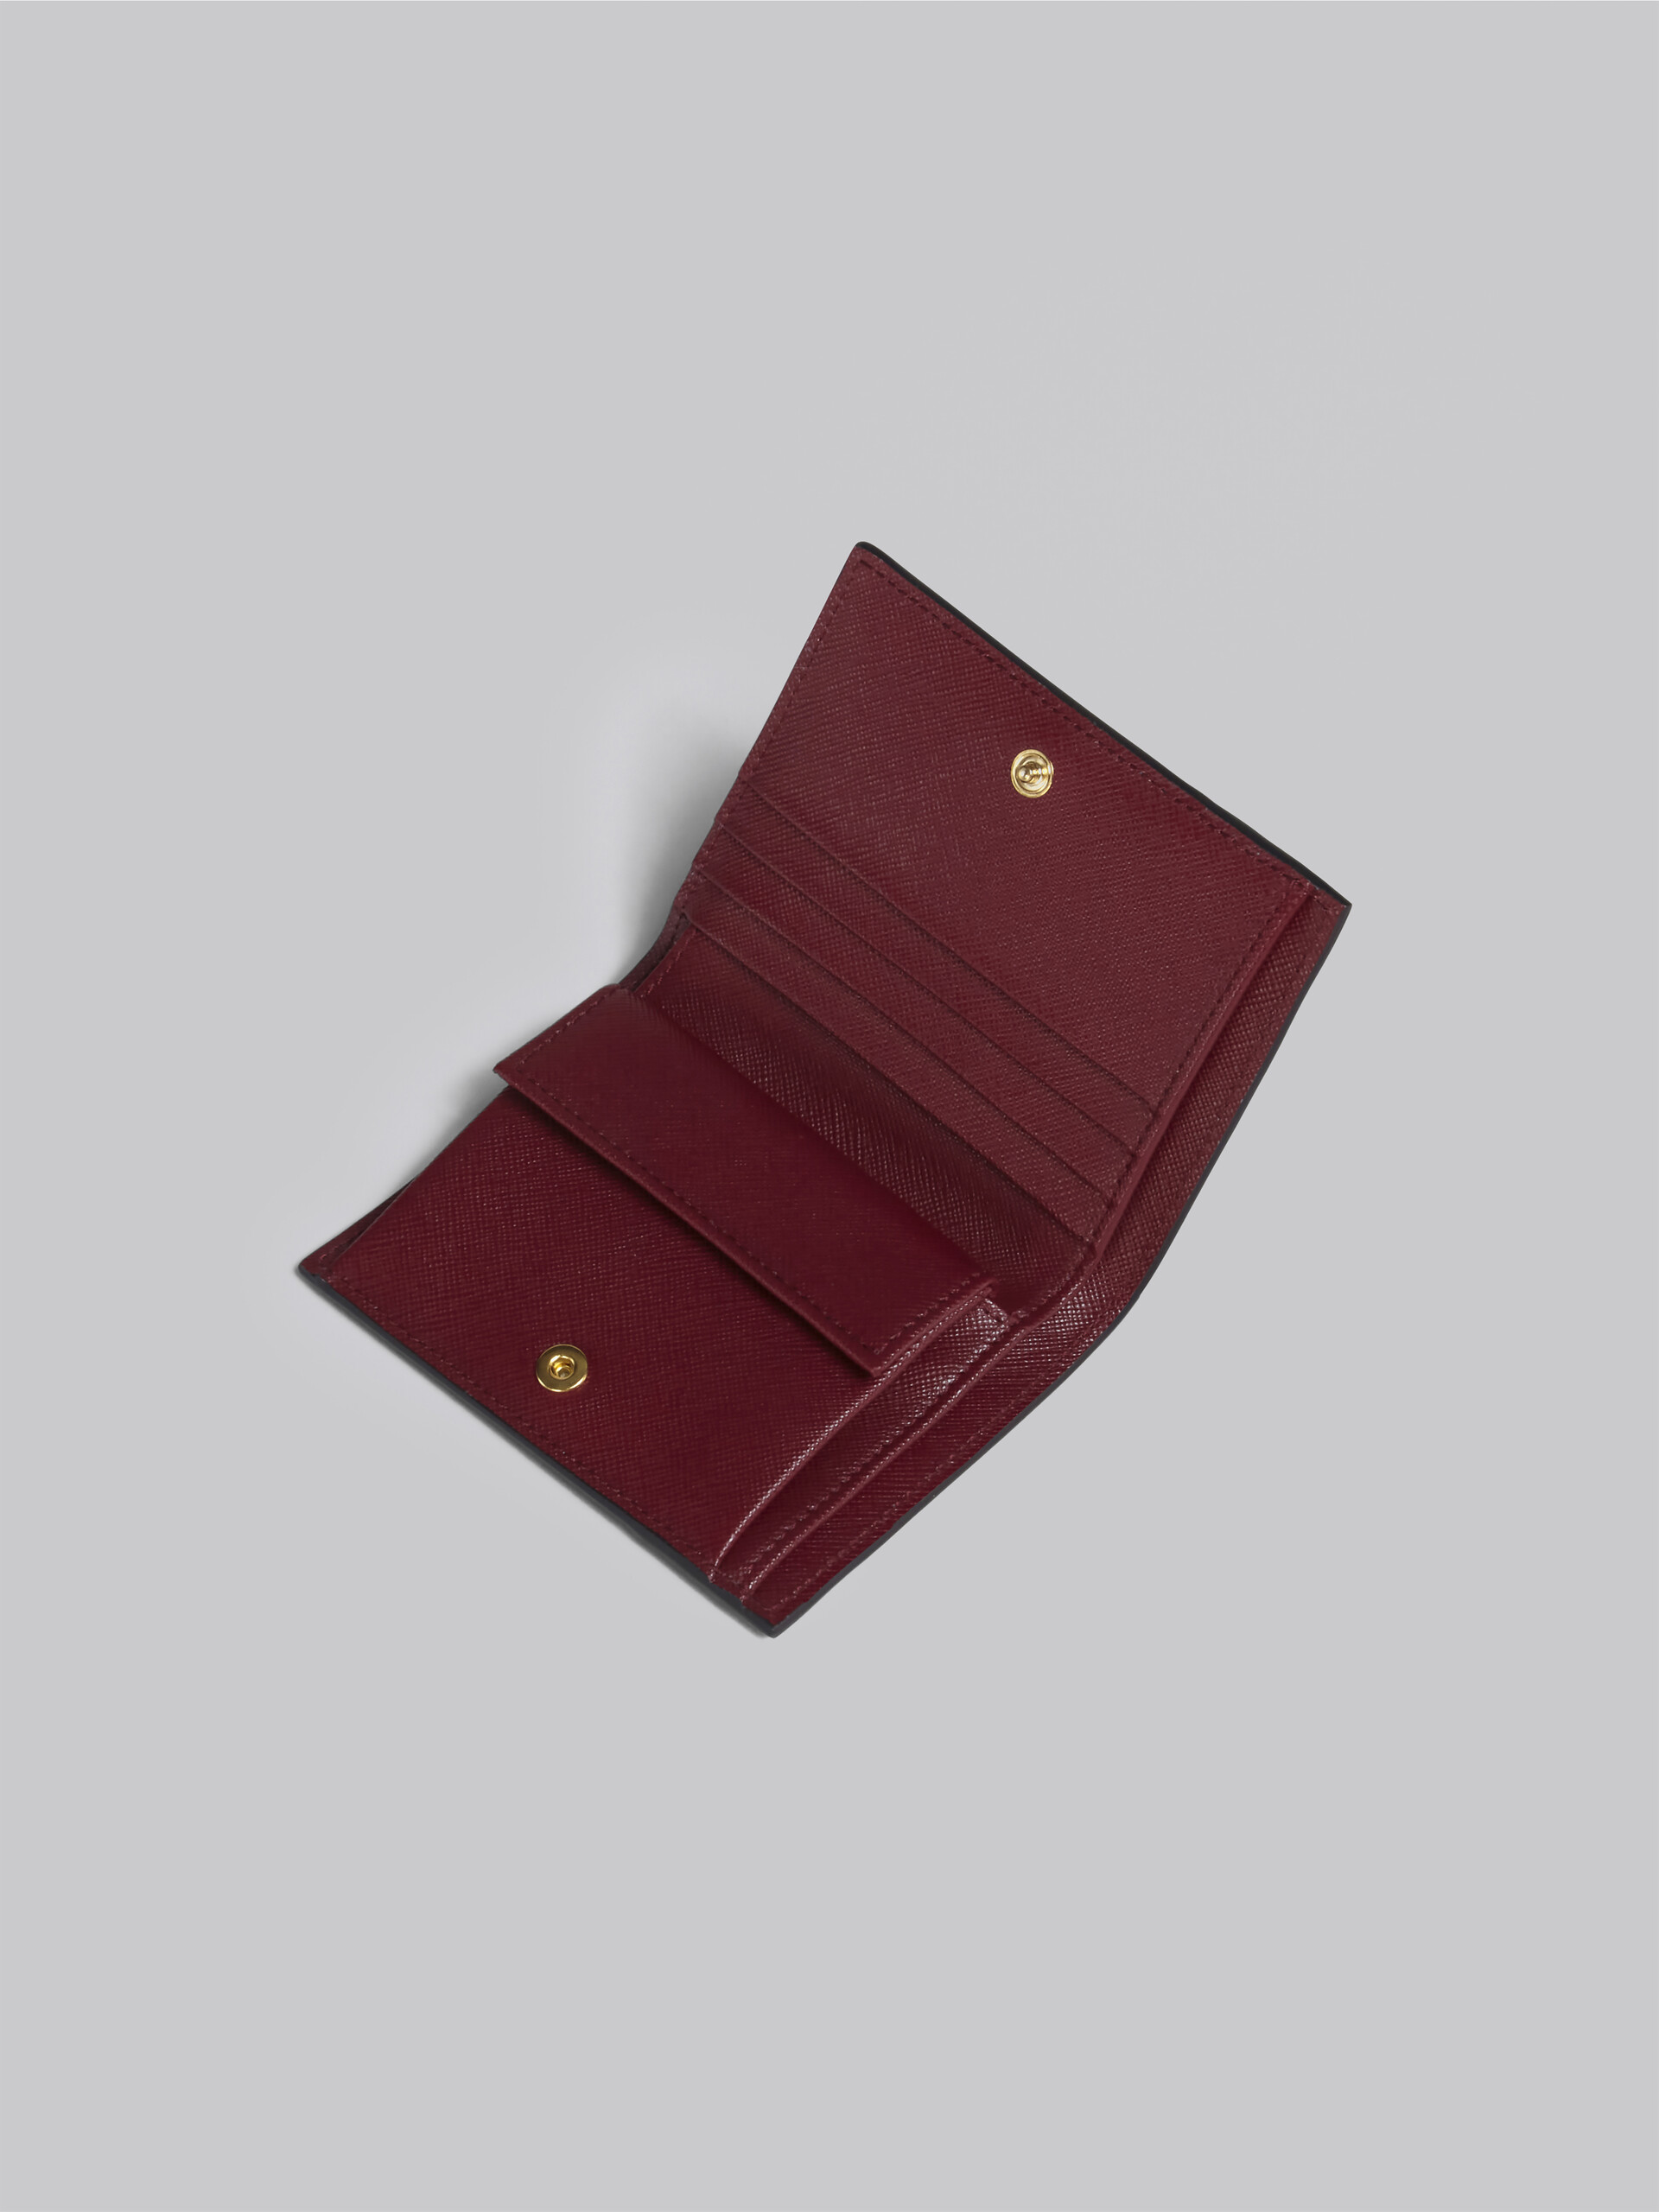 ブルー グレー レッド サフィアーノレザー製 二つ折りウォレット - 財布 - Image 4